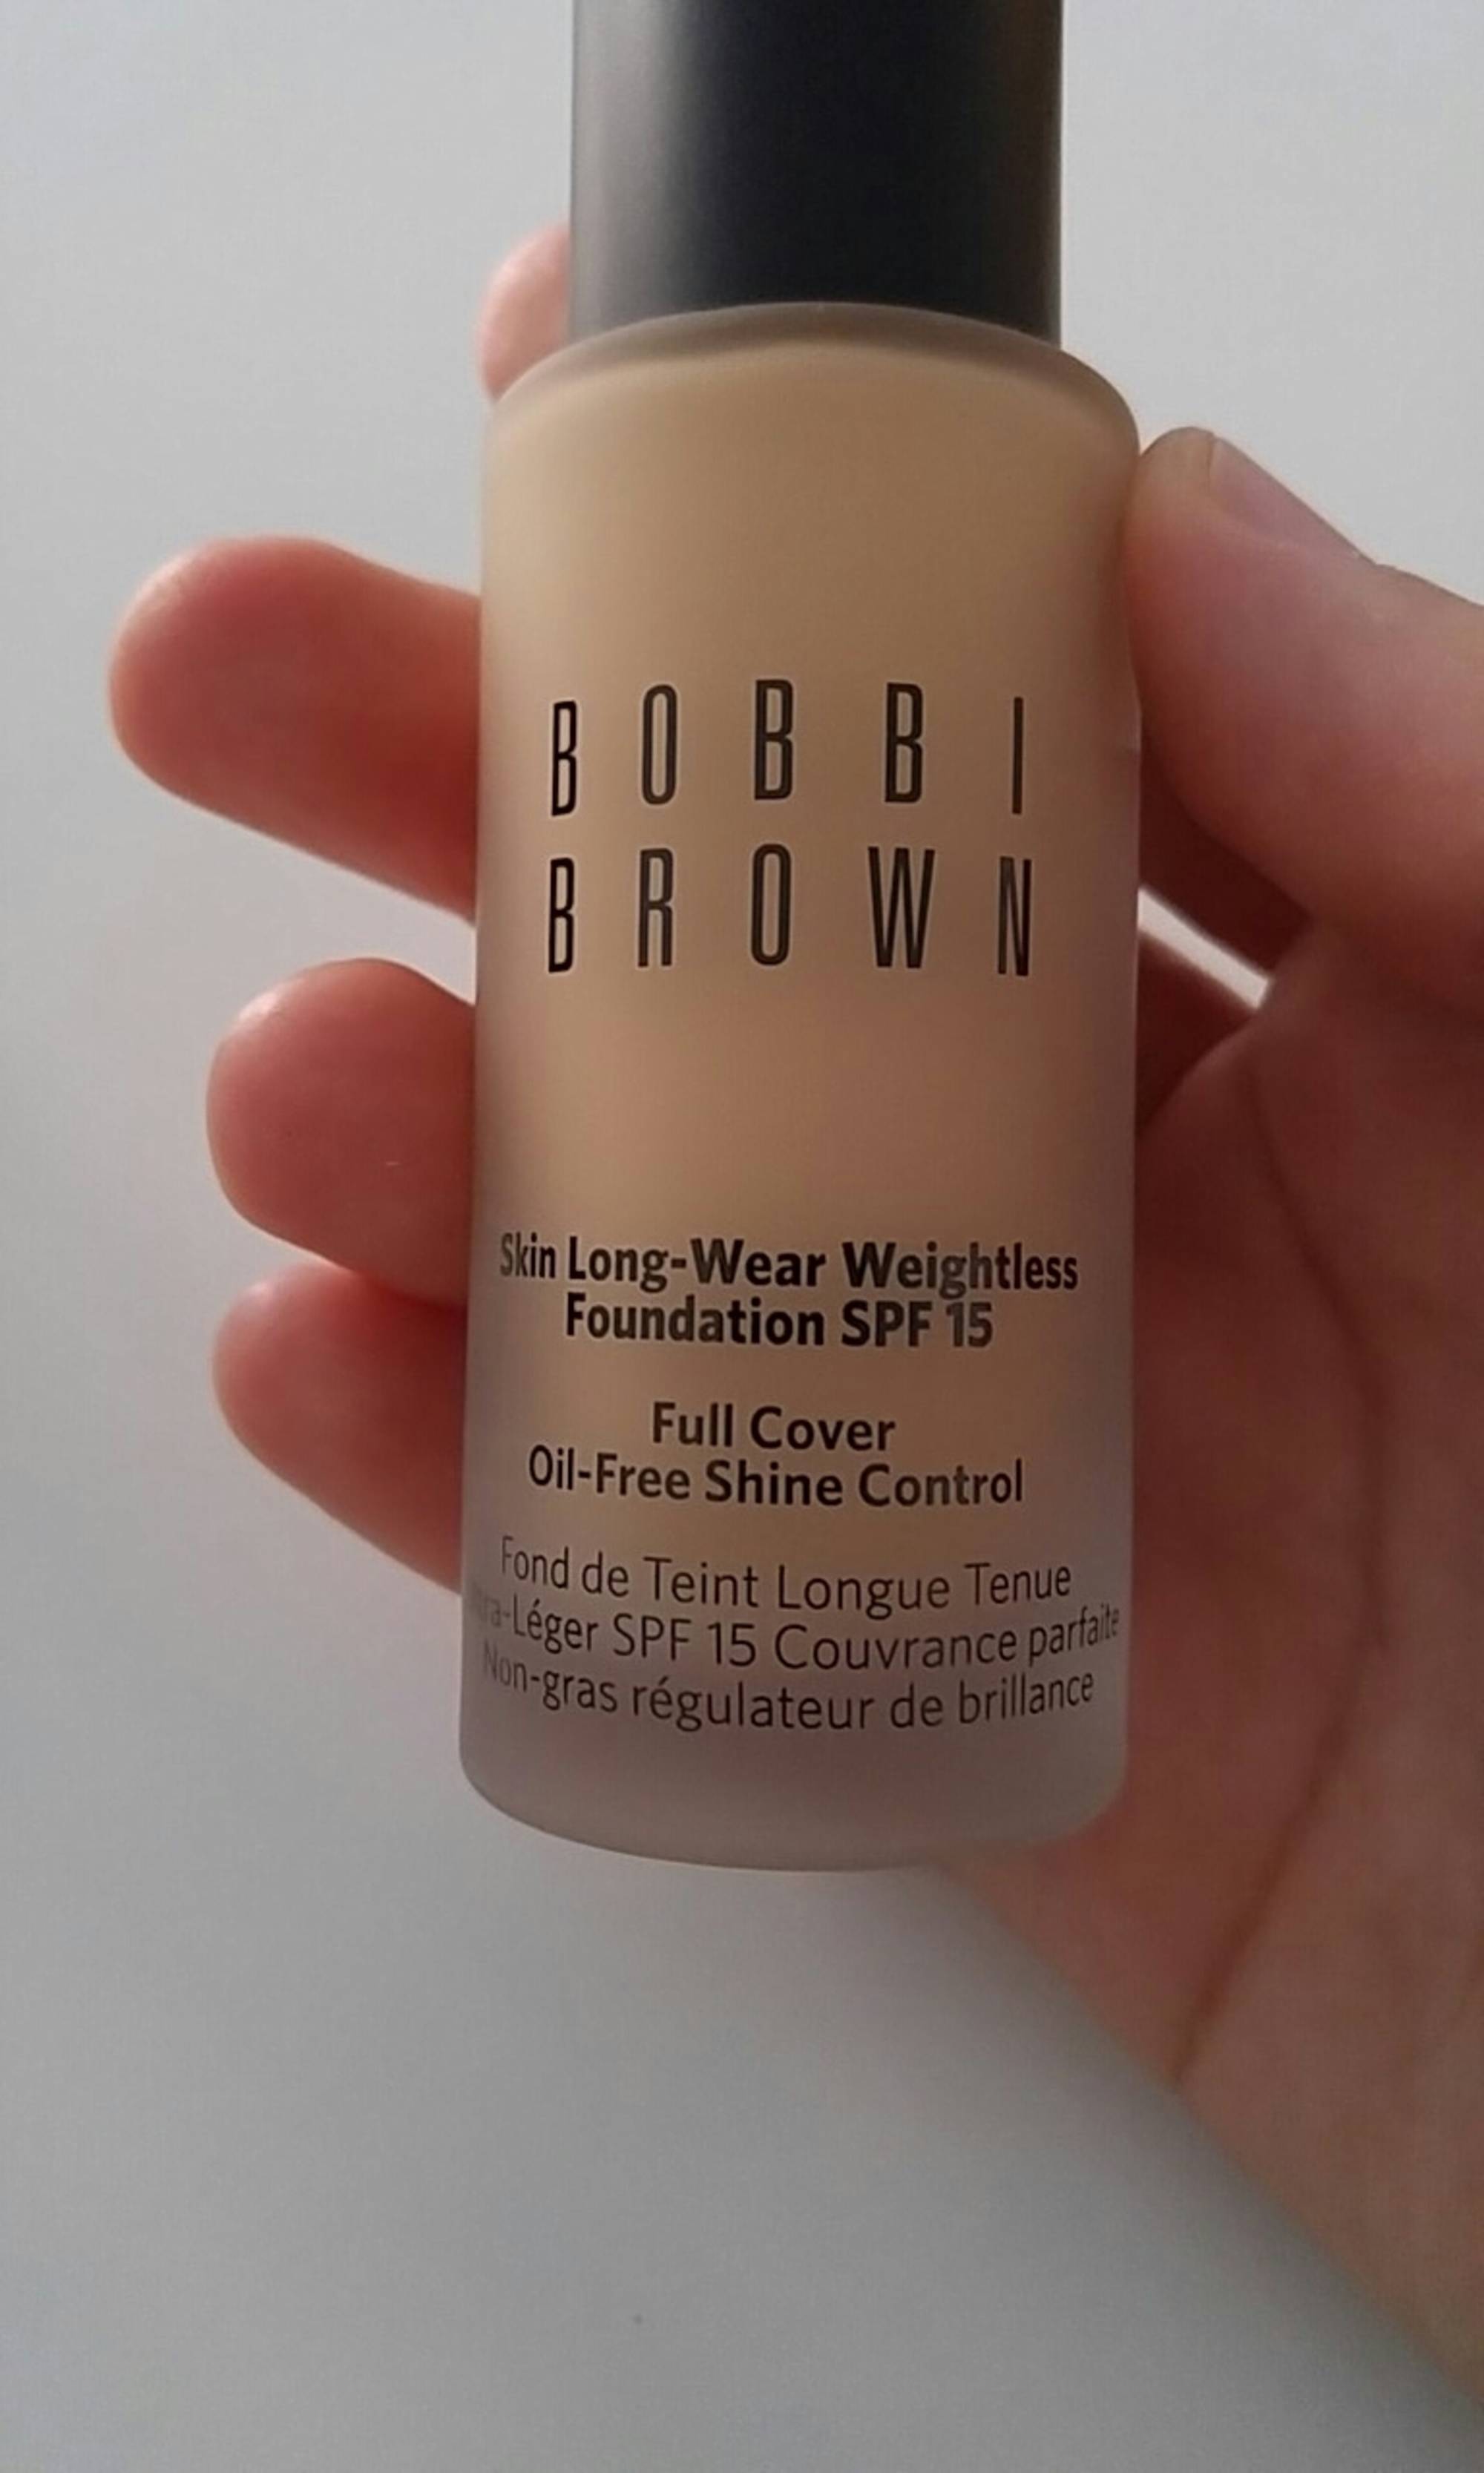 BOBBI BROWN - Sking long-wear weightless foundation SPF 15